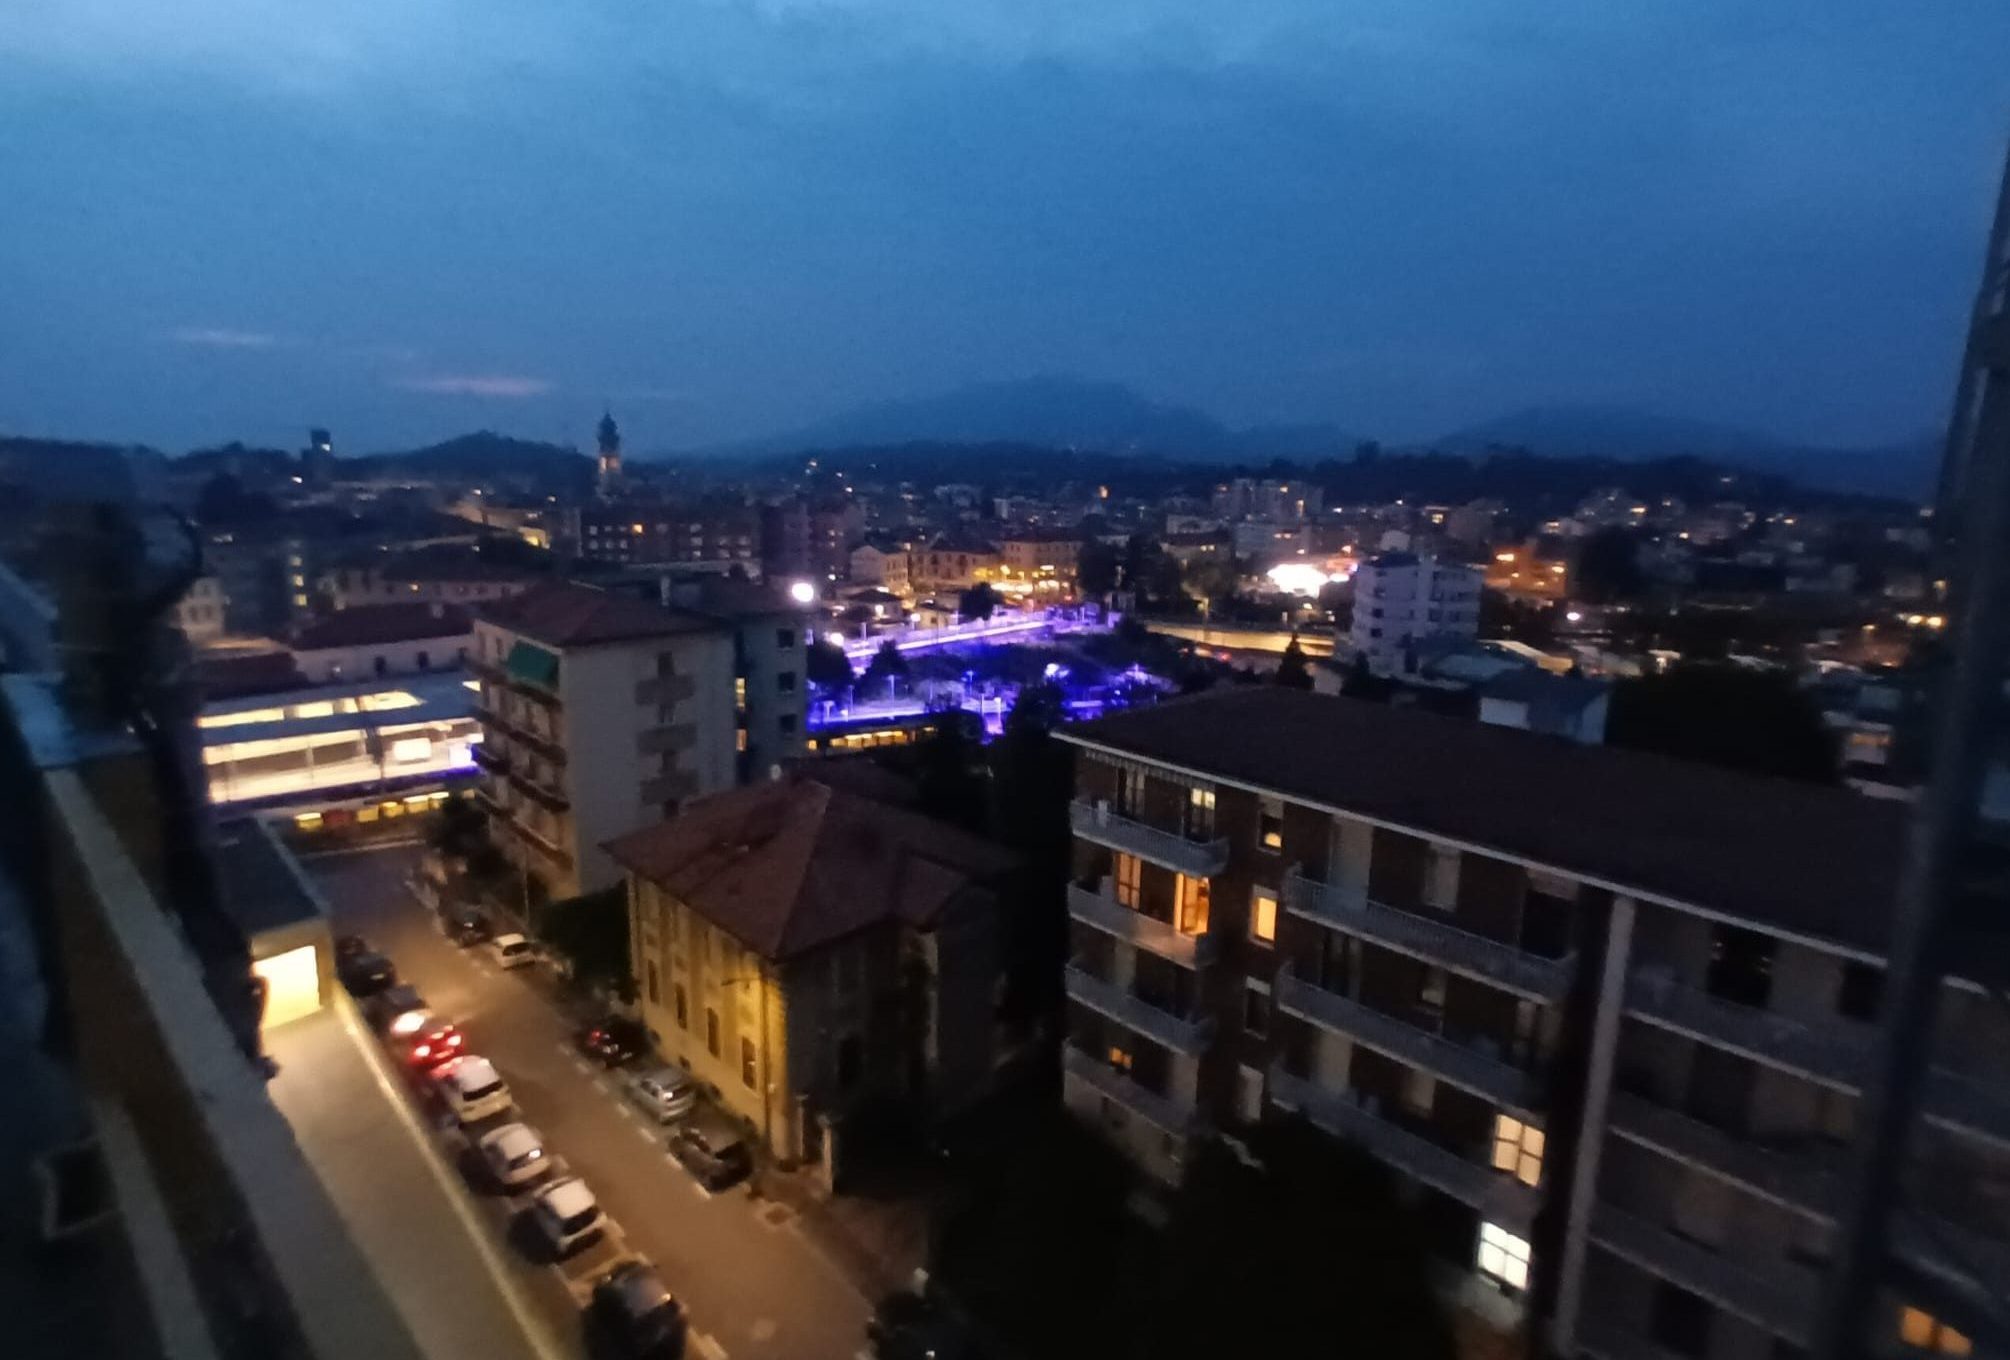 Le camere protette prendono forma nel cielo di Varese